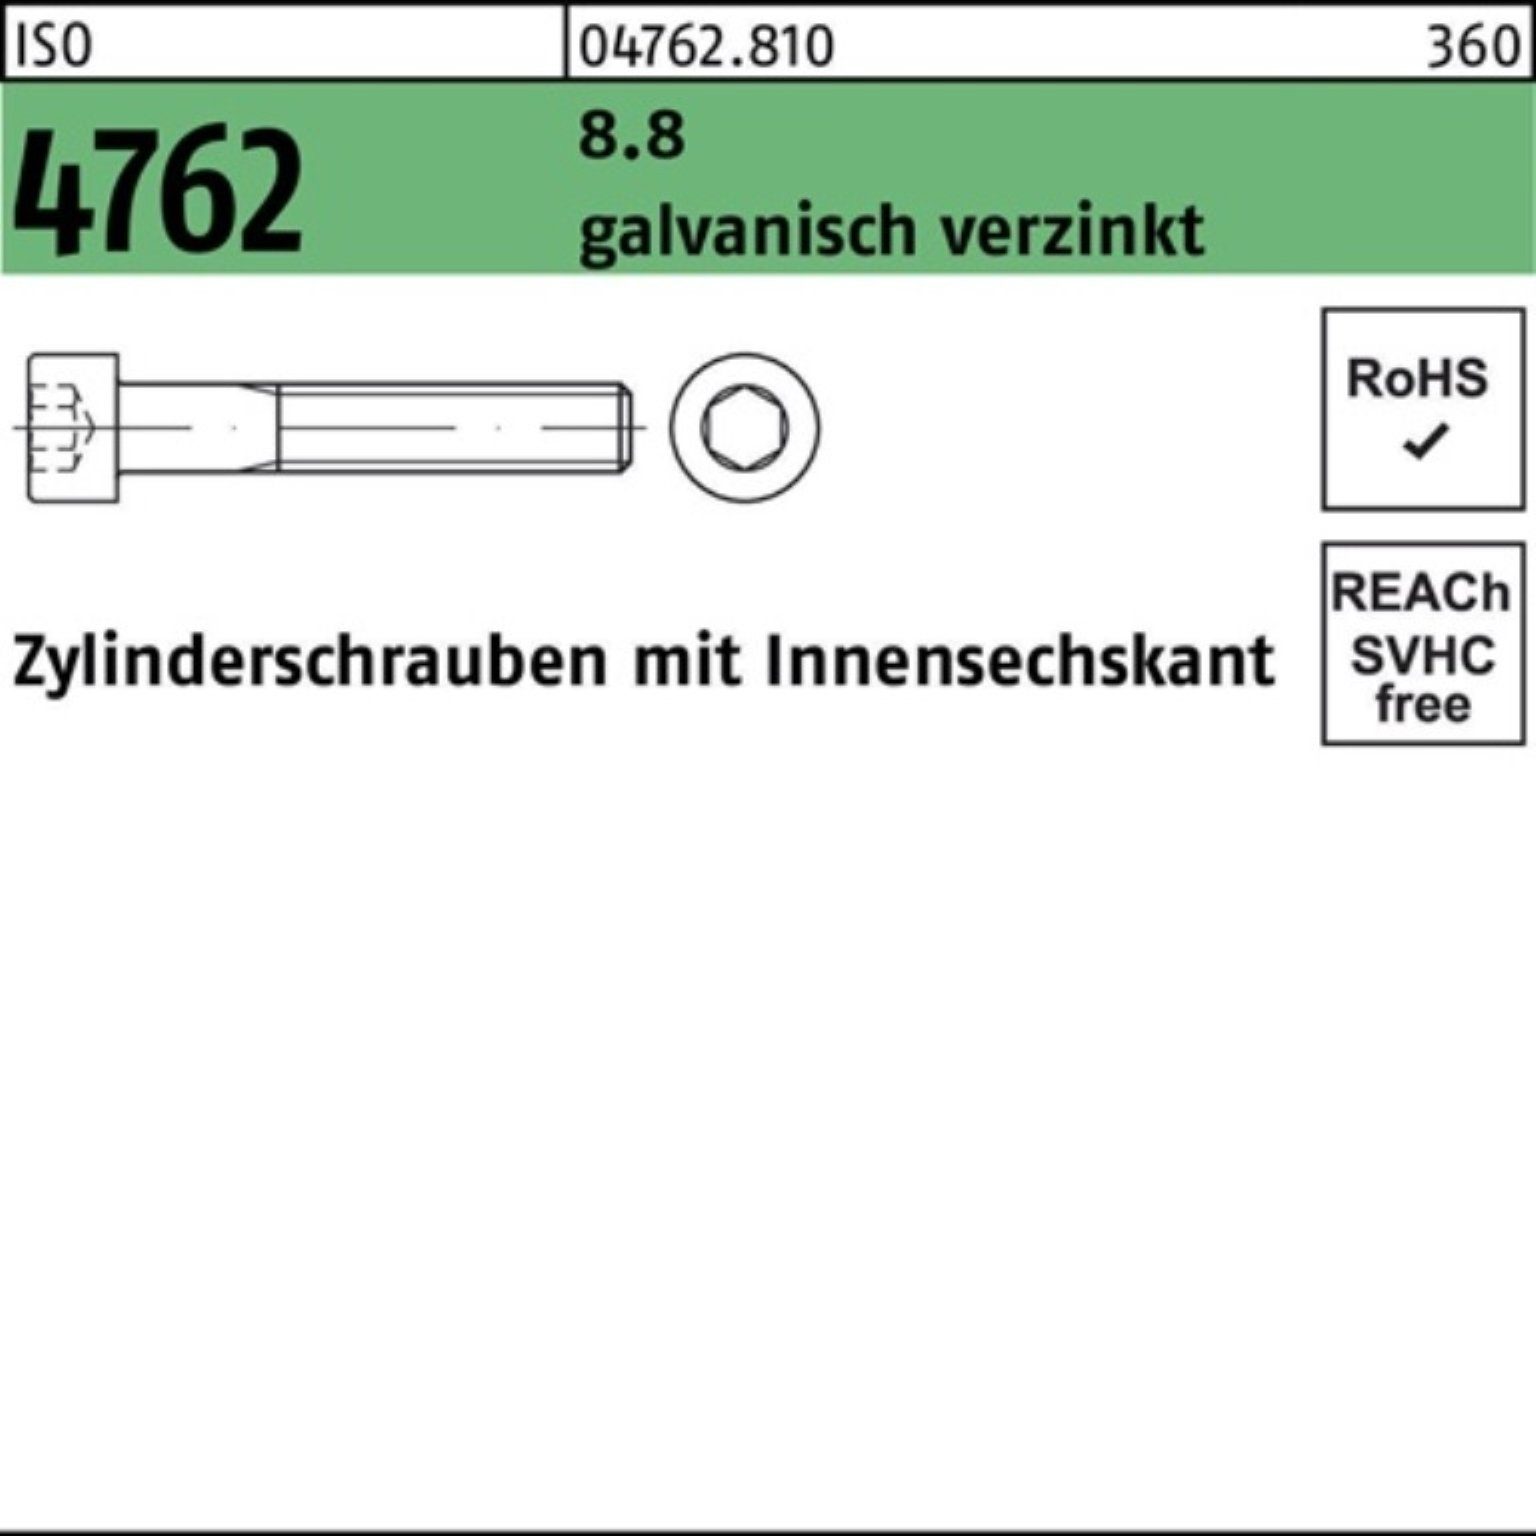 Reyher Zylinderschraube 1 Zylinderschraube M6x230 4762 100er 8.8 ISO galv.verz. Innen-6kt Pack